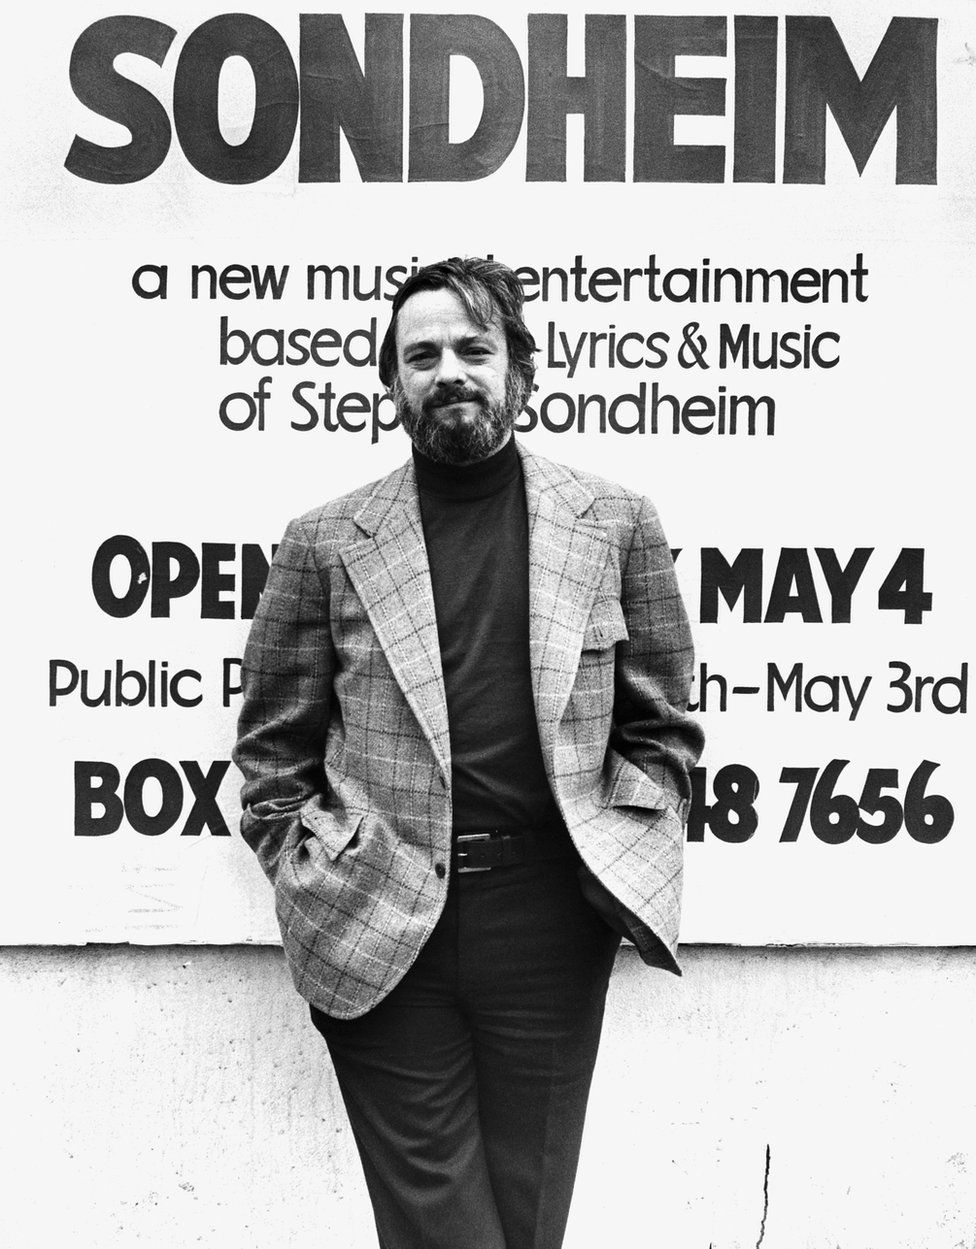 Stephen Sondheim in 1976